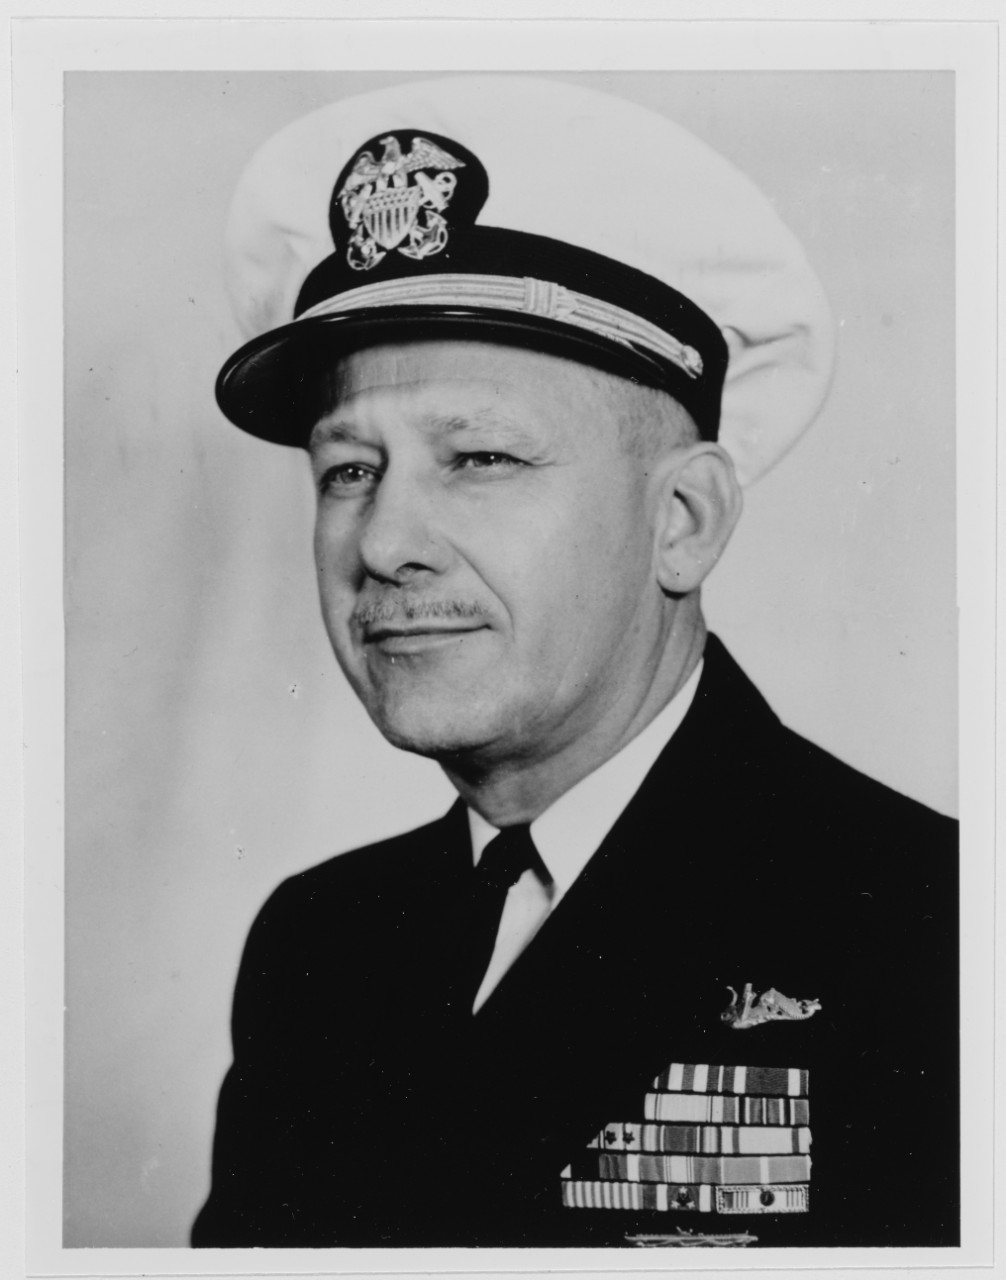 Captain Charles B. Jackson Jr., USN